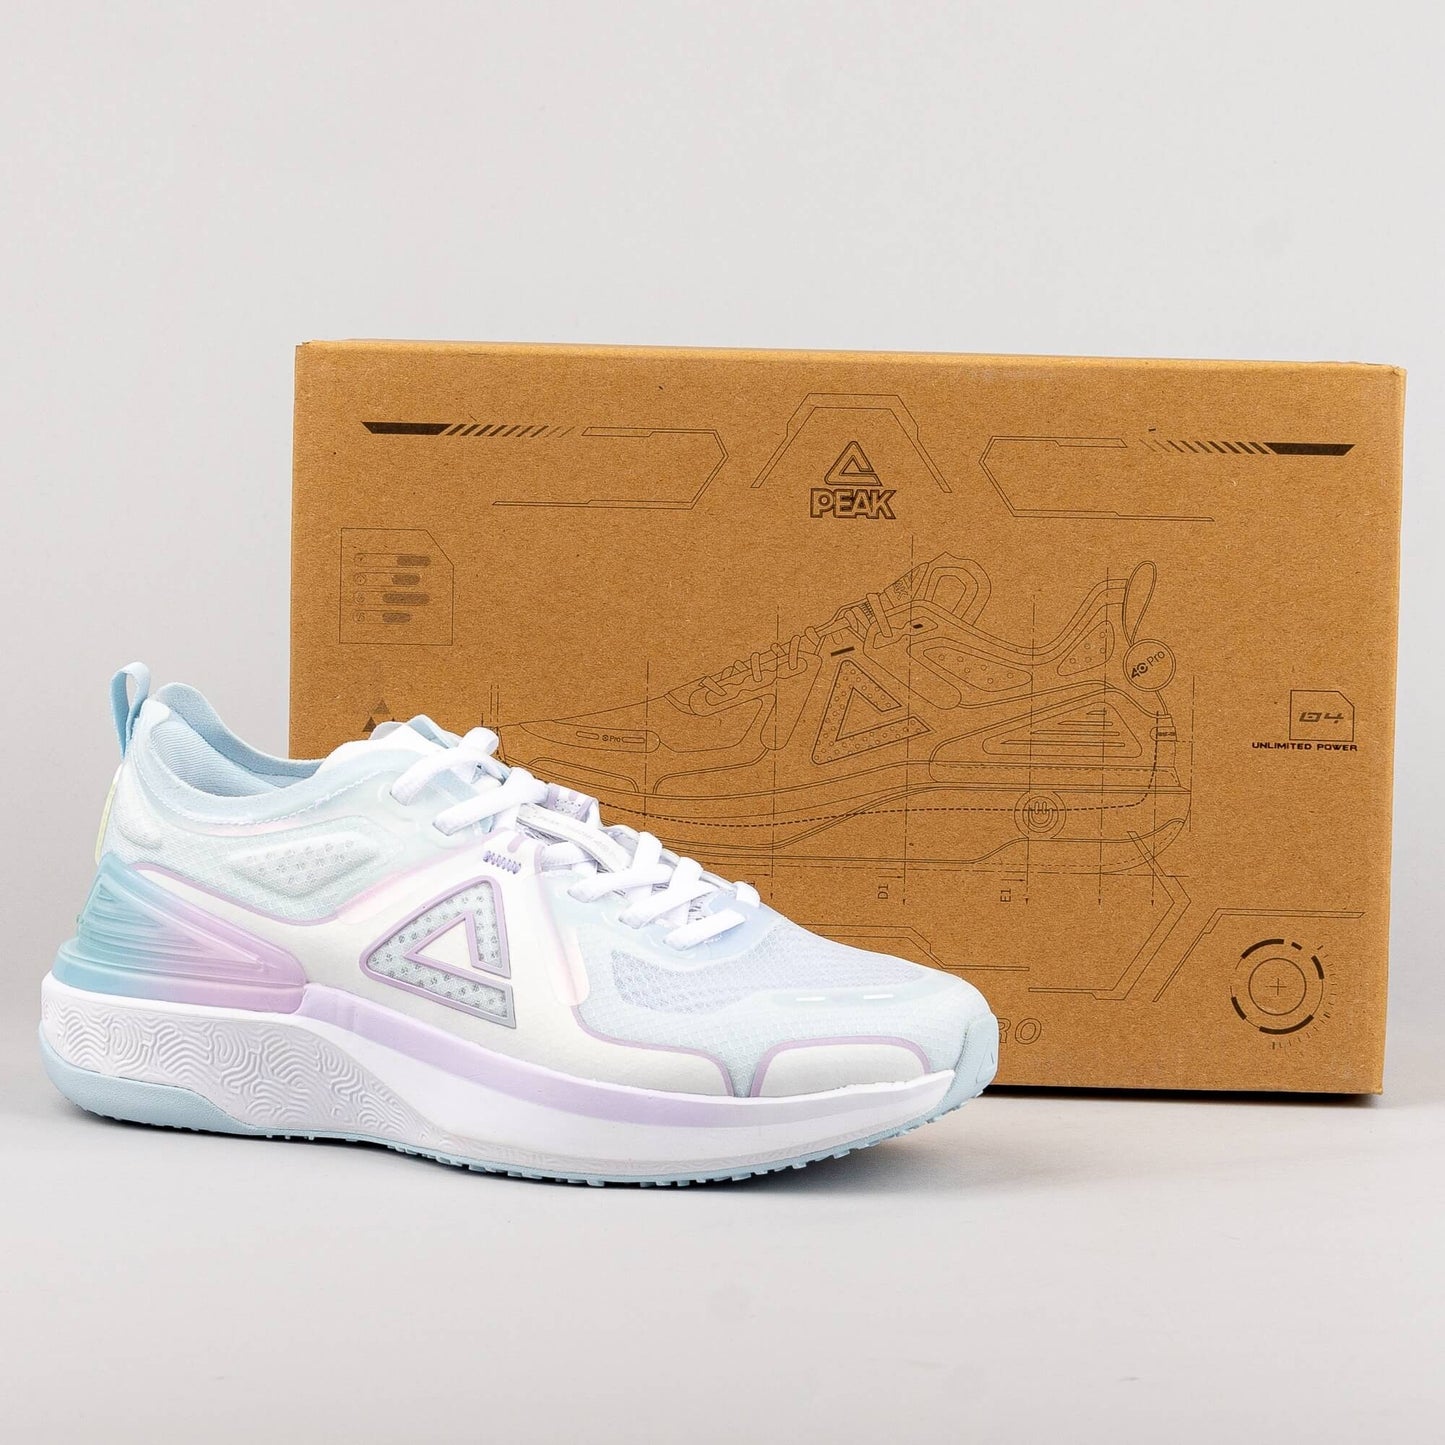 Peak Running Shoes Taichi 4.0 Pro Hy-Lan/Light Purple